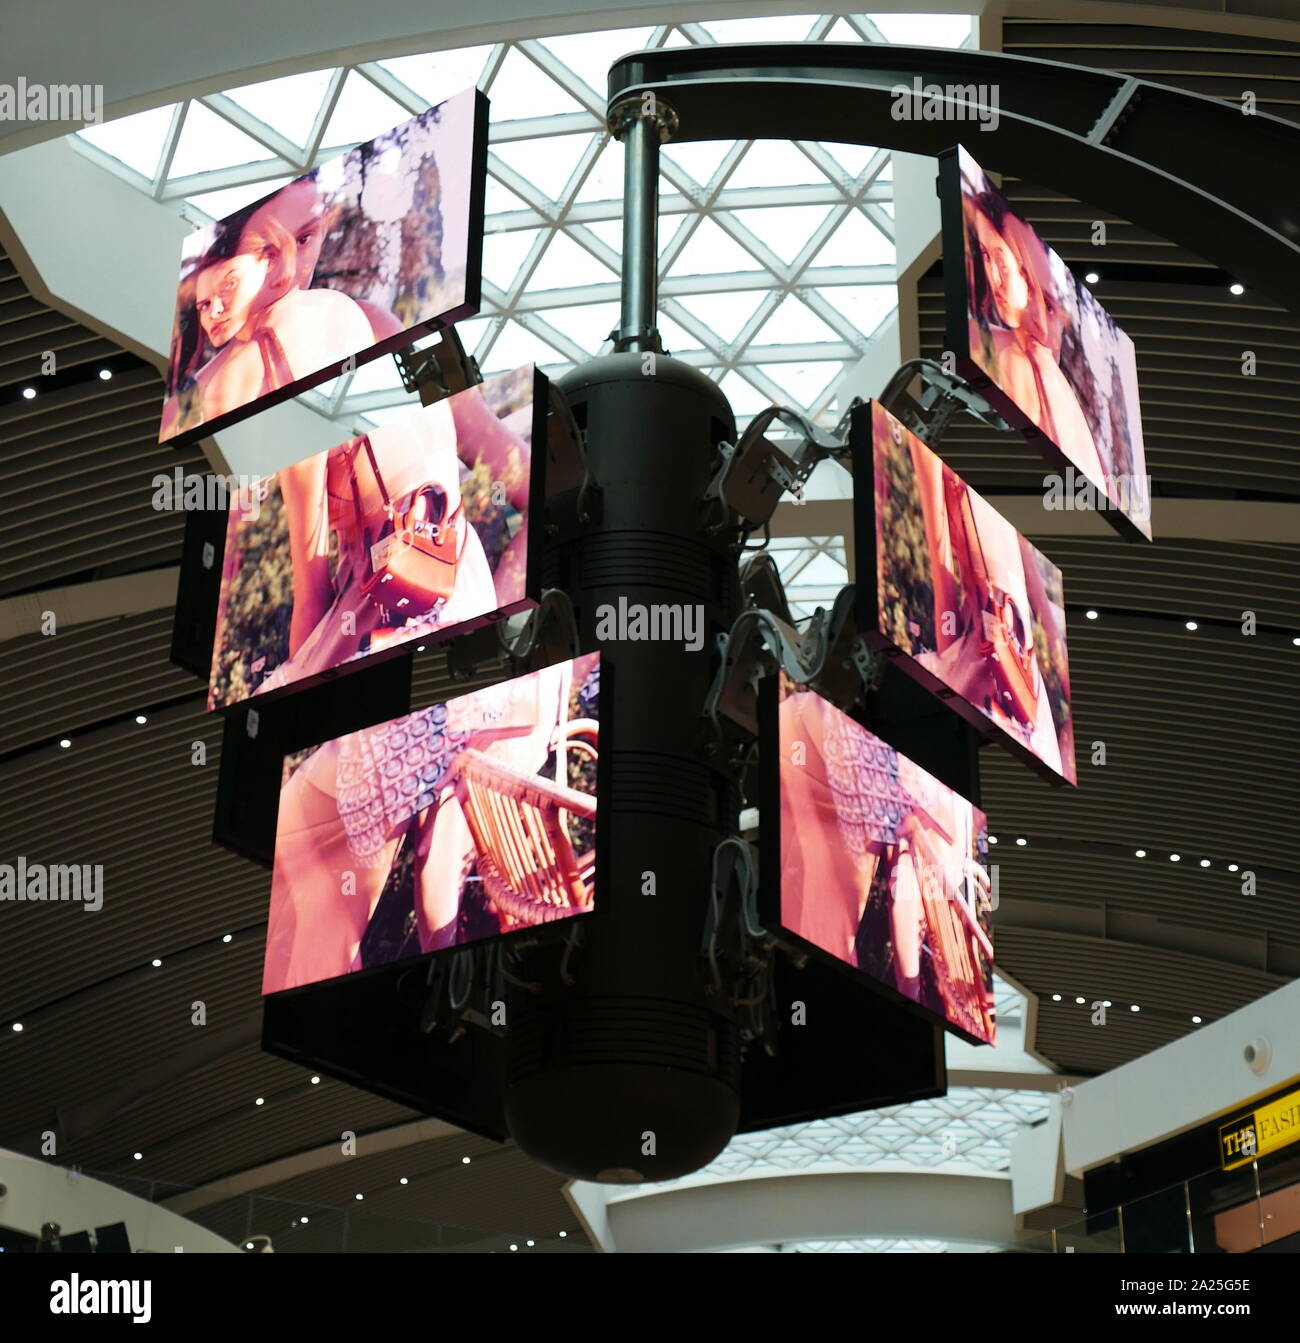 Un banco de las pantallas de la televisión digital en la terminal de salidas del aeropuerto internacional Fiumicino de Roma . Las pantallas muestran anuncios secuencial en un ciclo regular en que ambas pantallas de anuncios y girar el cambio y volver a alinear para crear múltiples imágenes o agrupados. Foto de stock